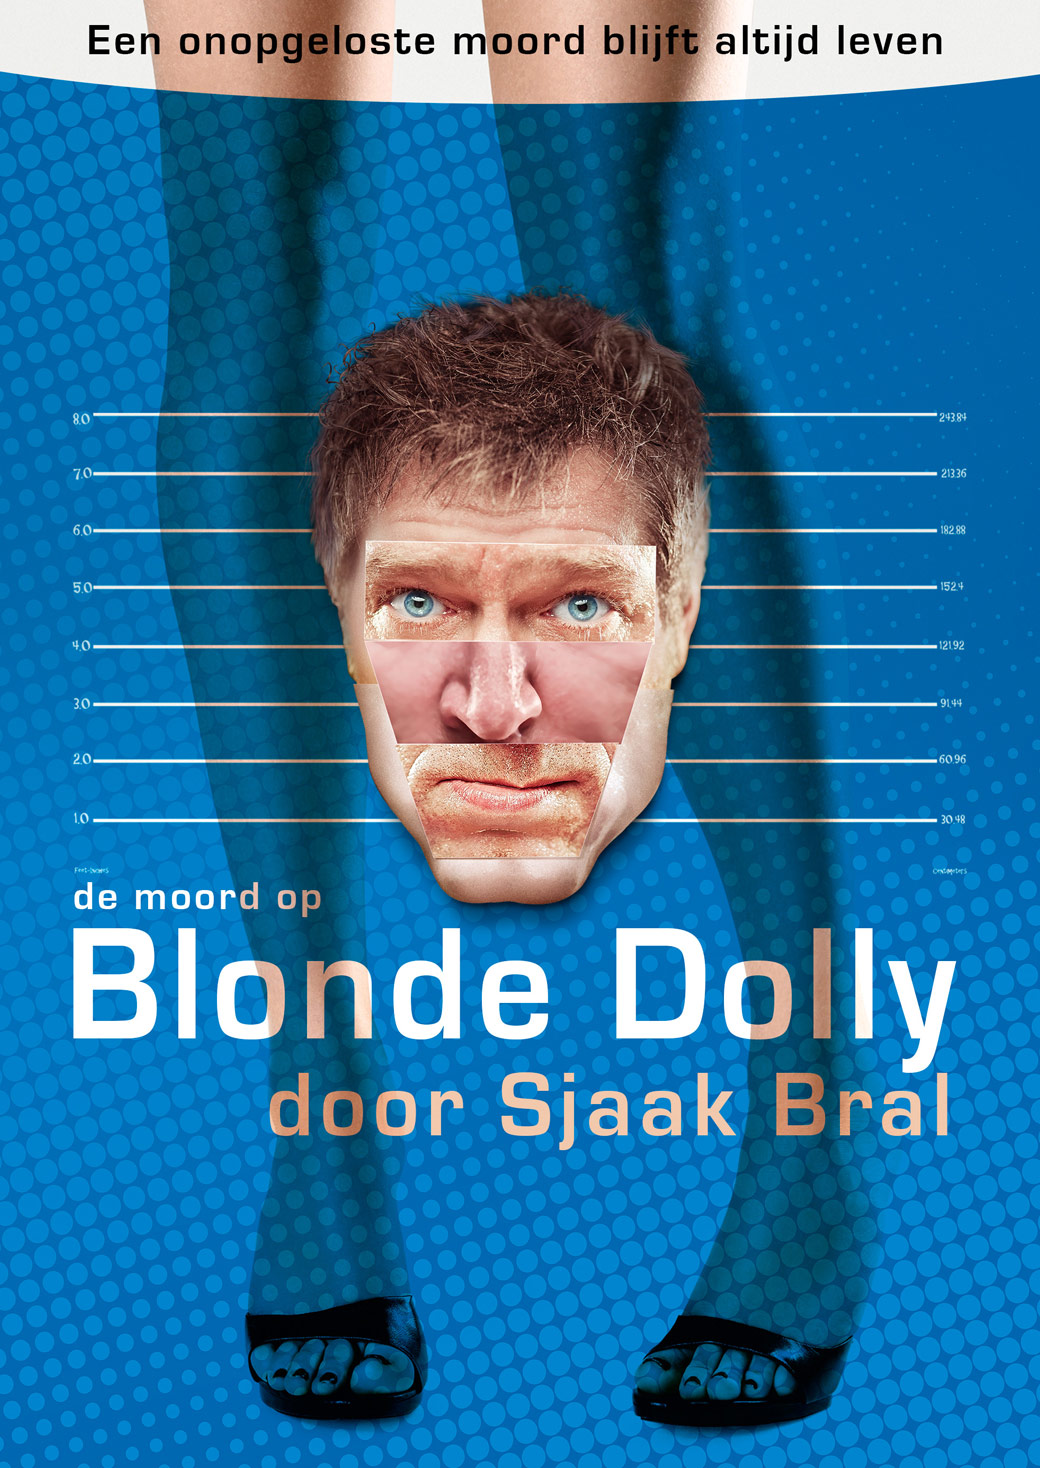 De Moord op Blonde Dolly